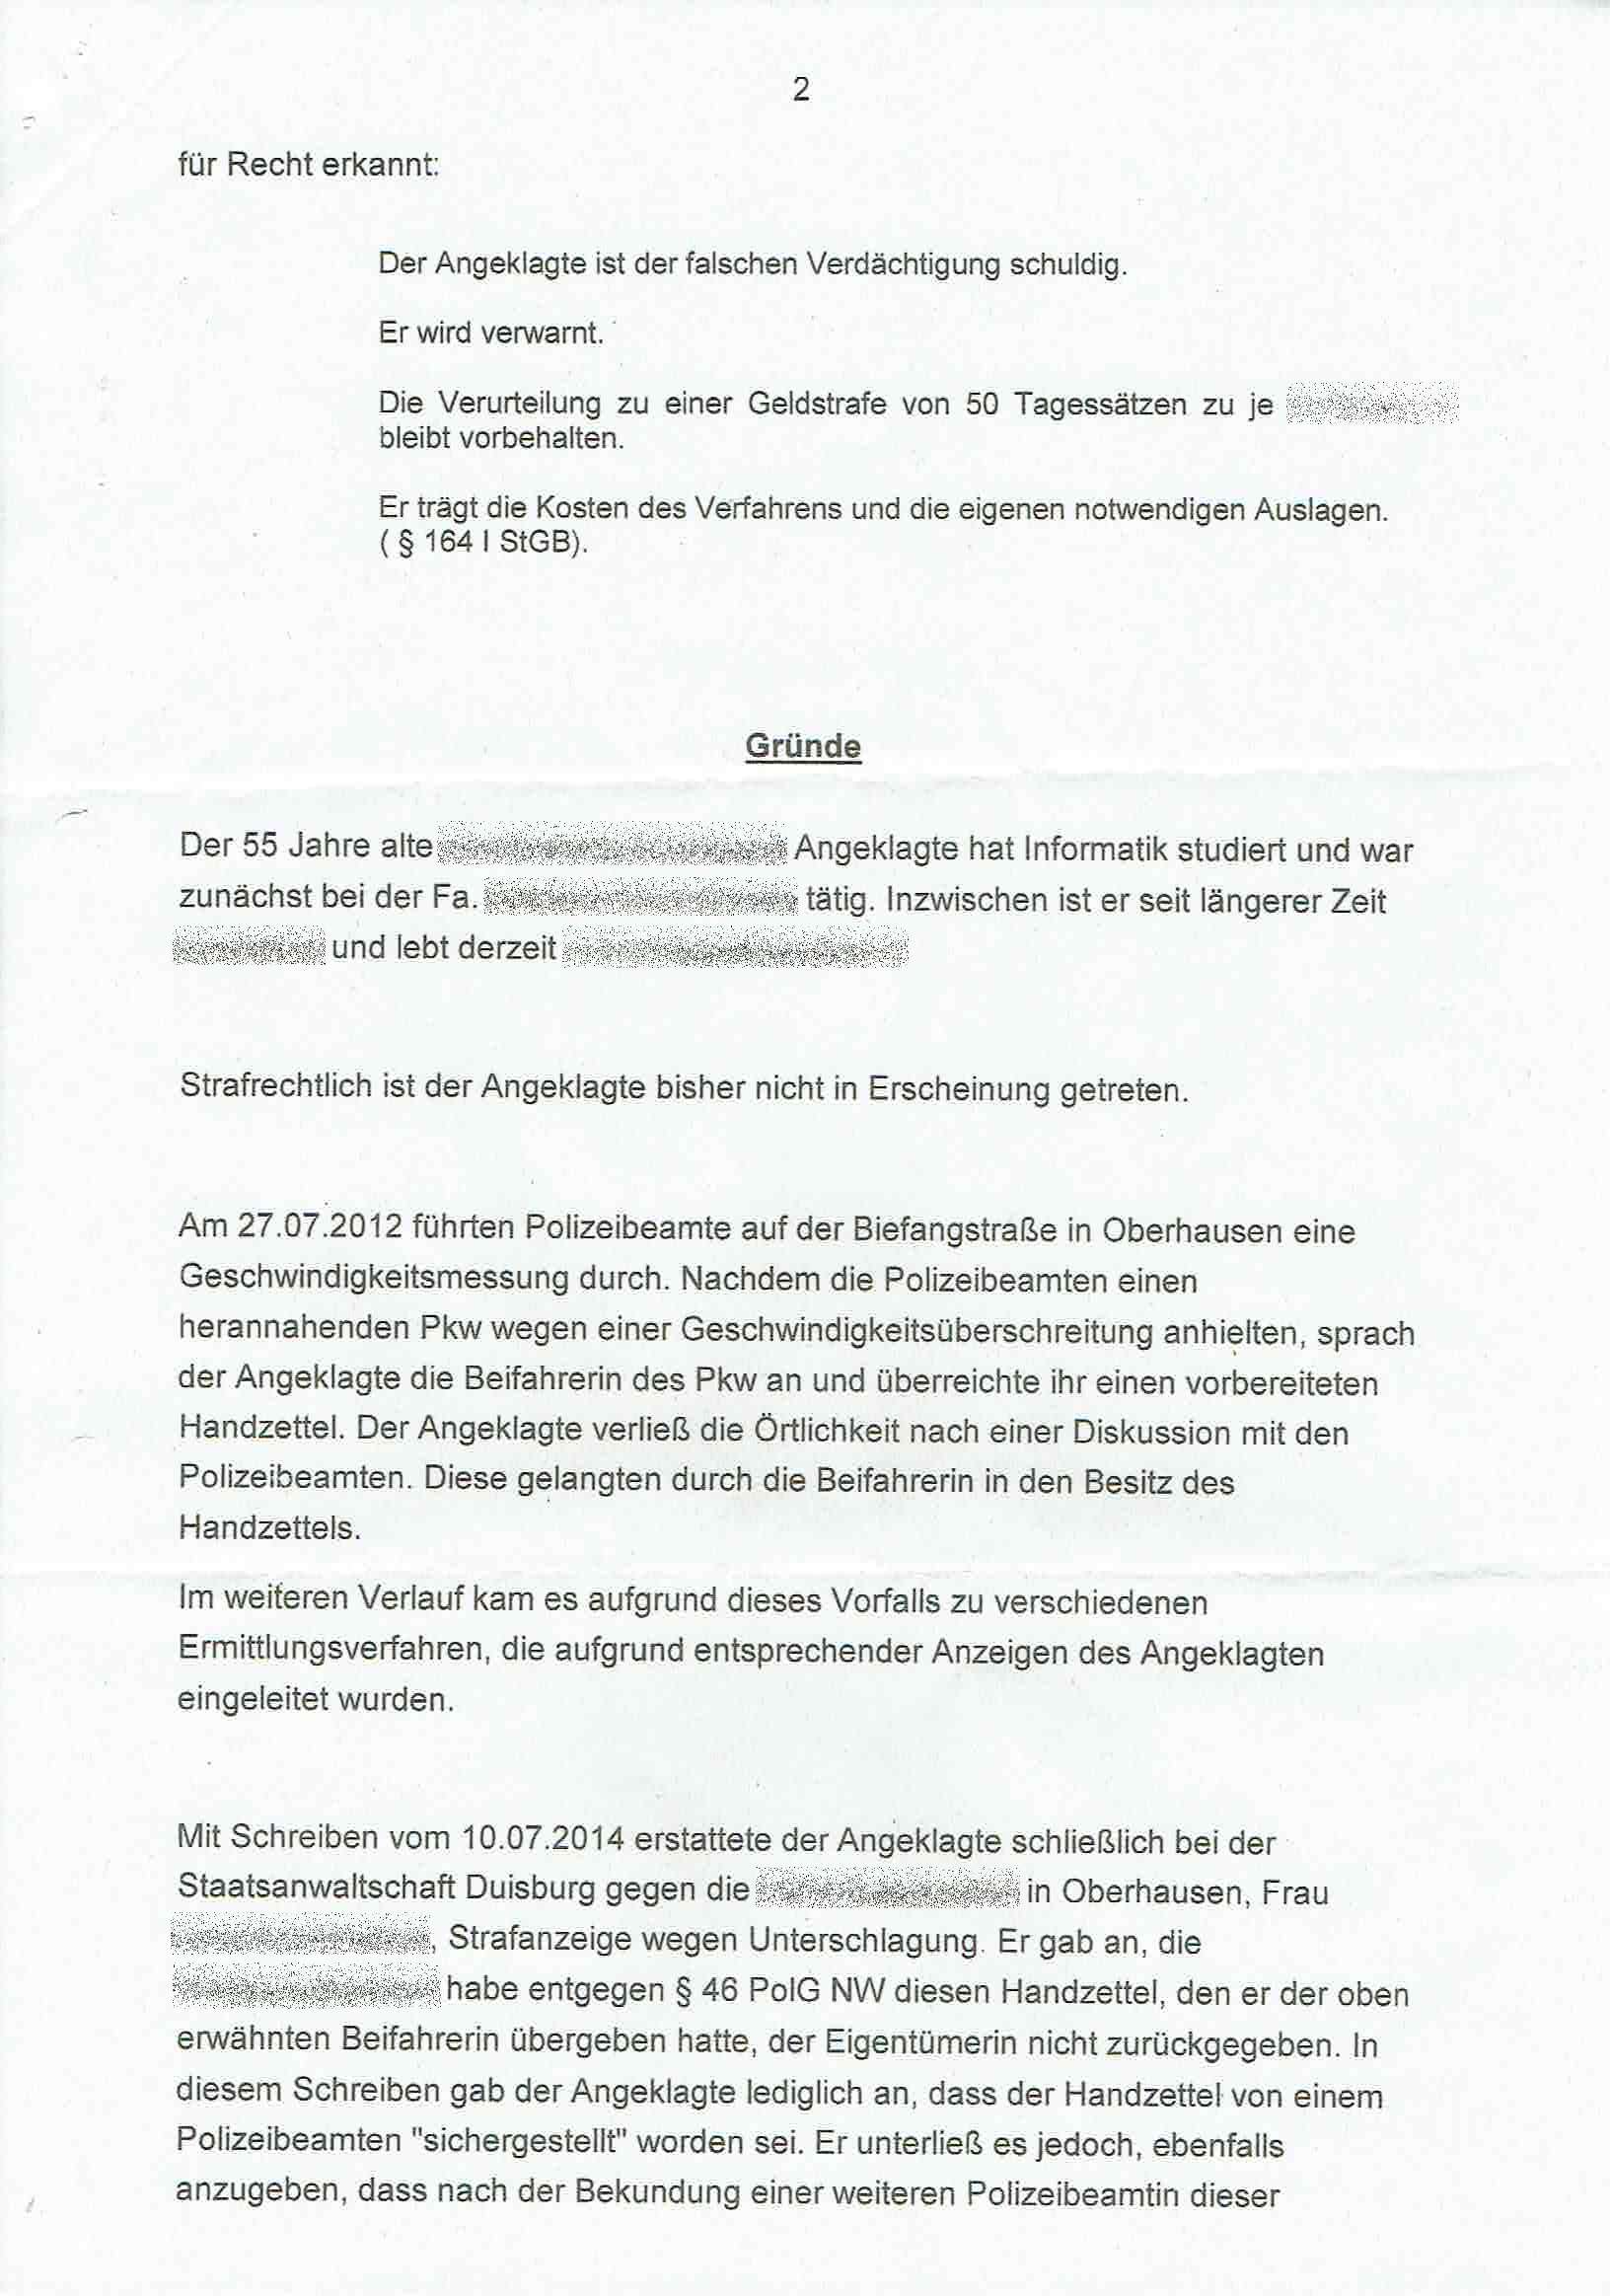 Antwort des Direktors des Amtsgerichts Duisburg vom 19.09.2017, Seite 4